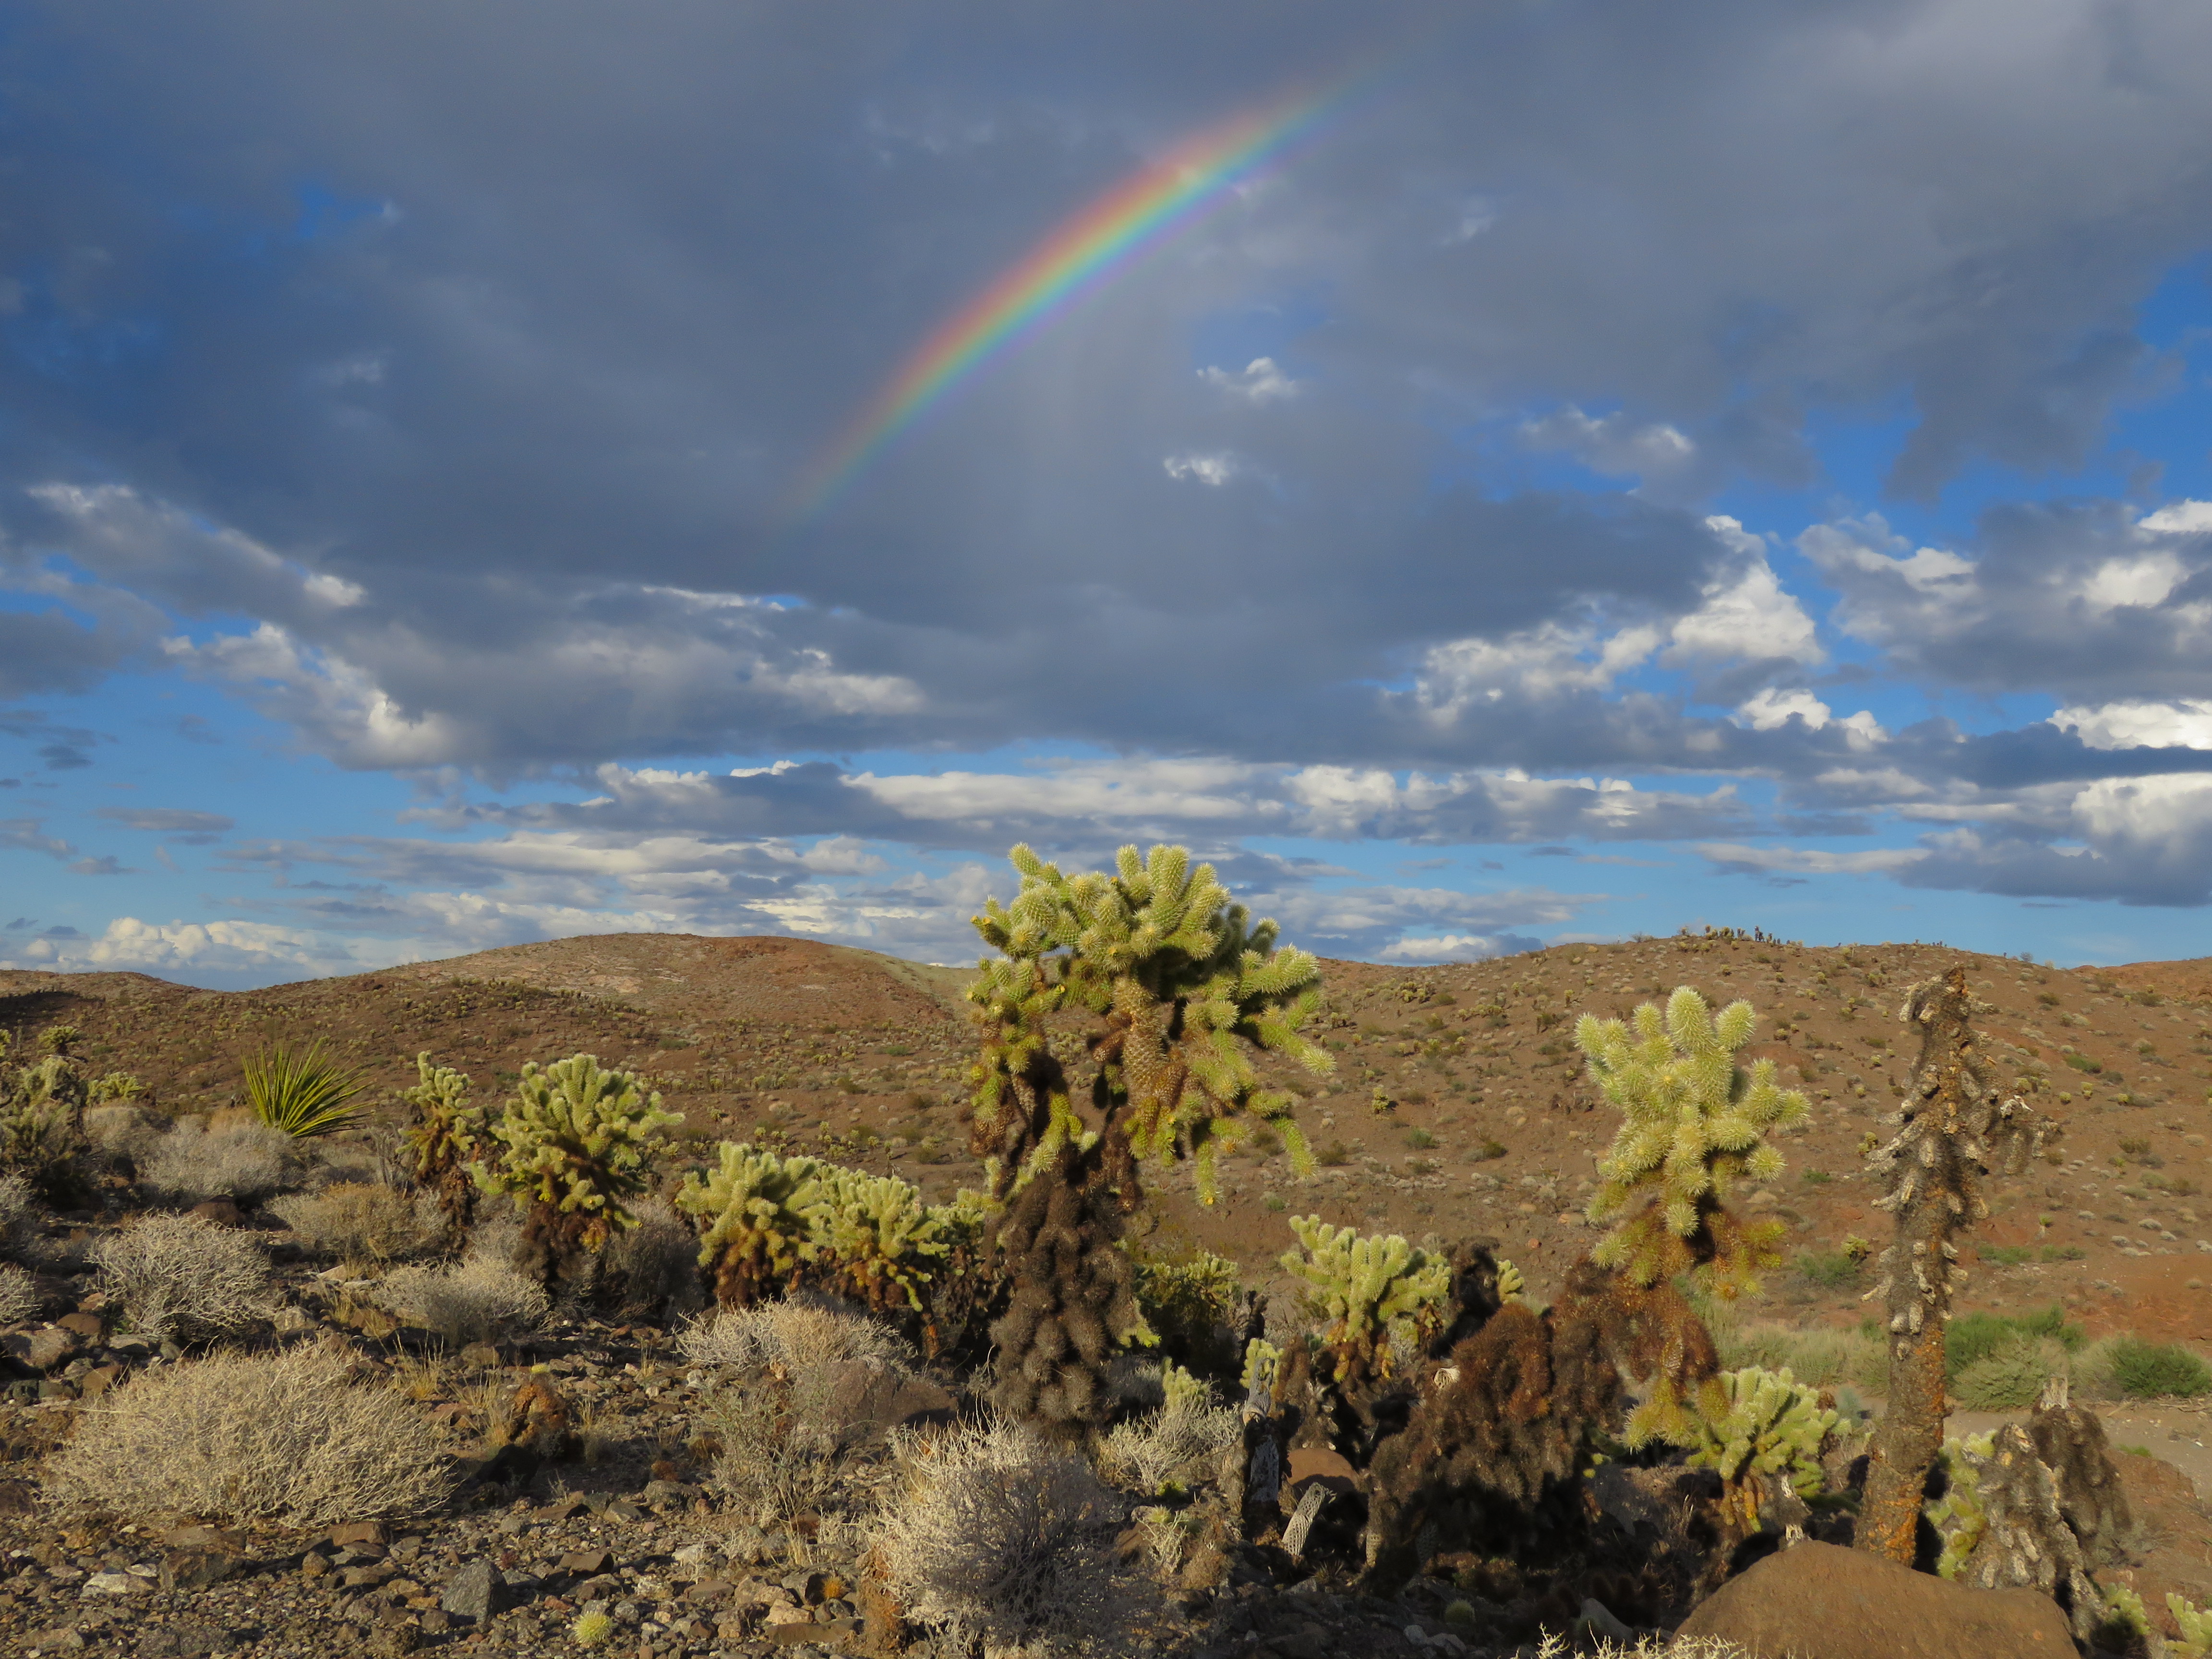 President to designate California Desert national monuments